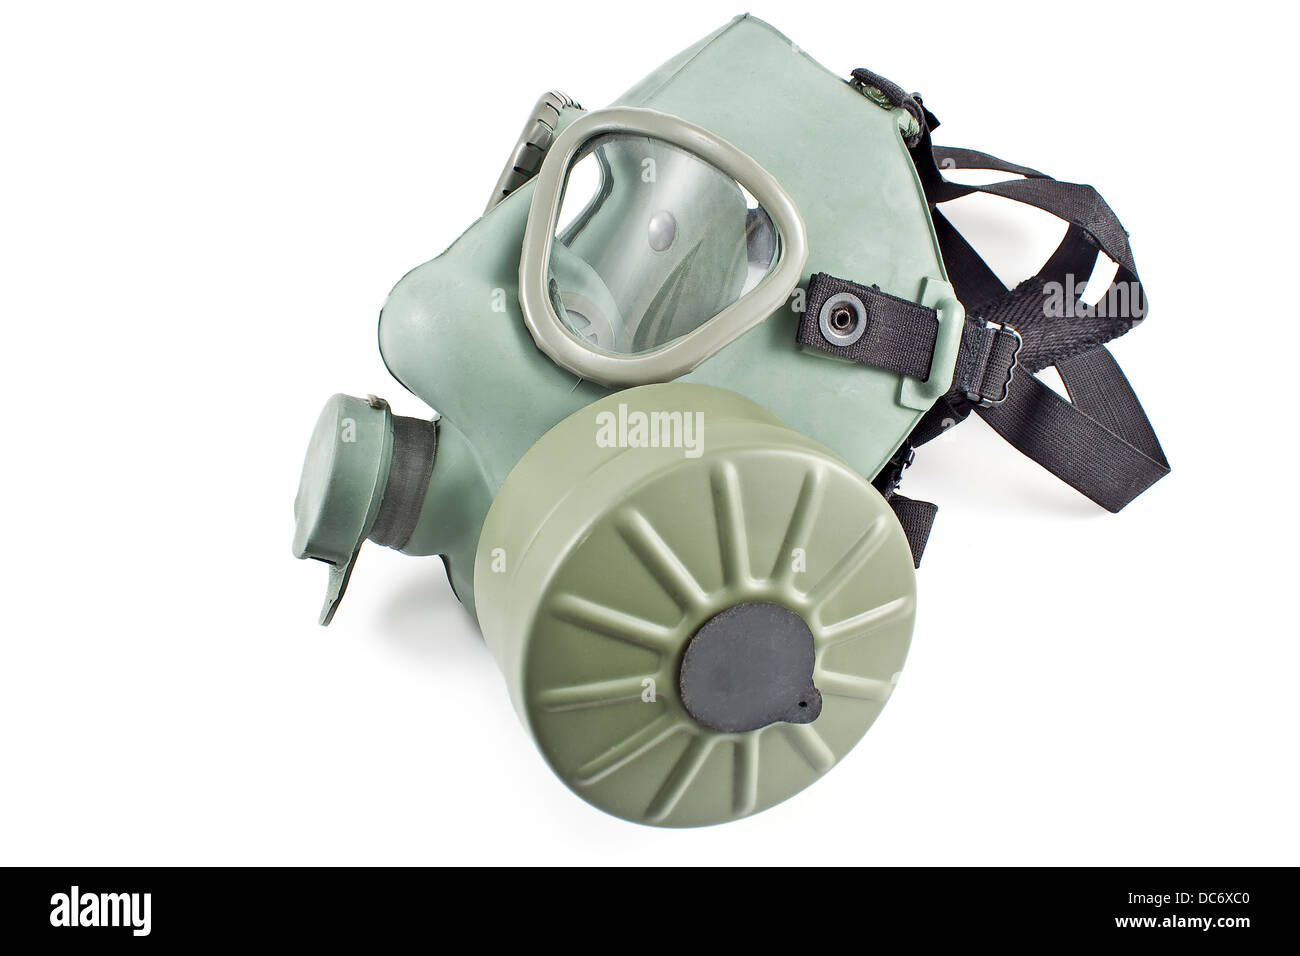 Gas mask isolated on white background Stock Photo